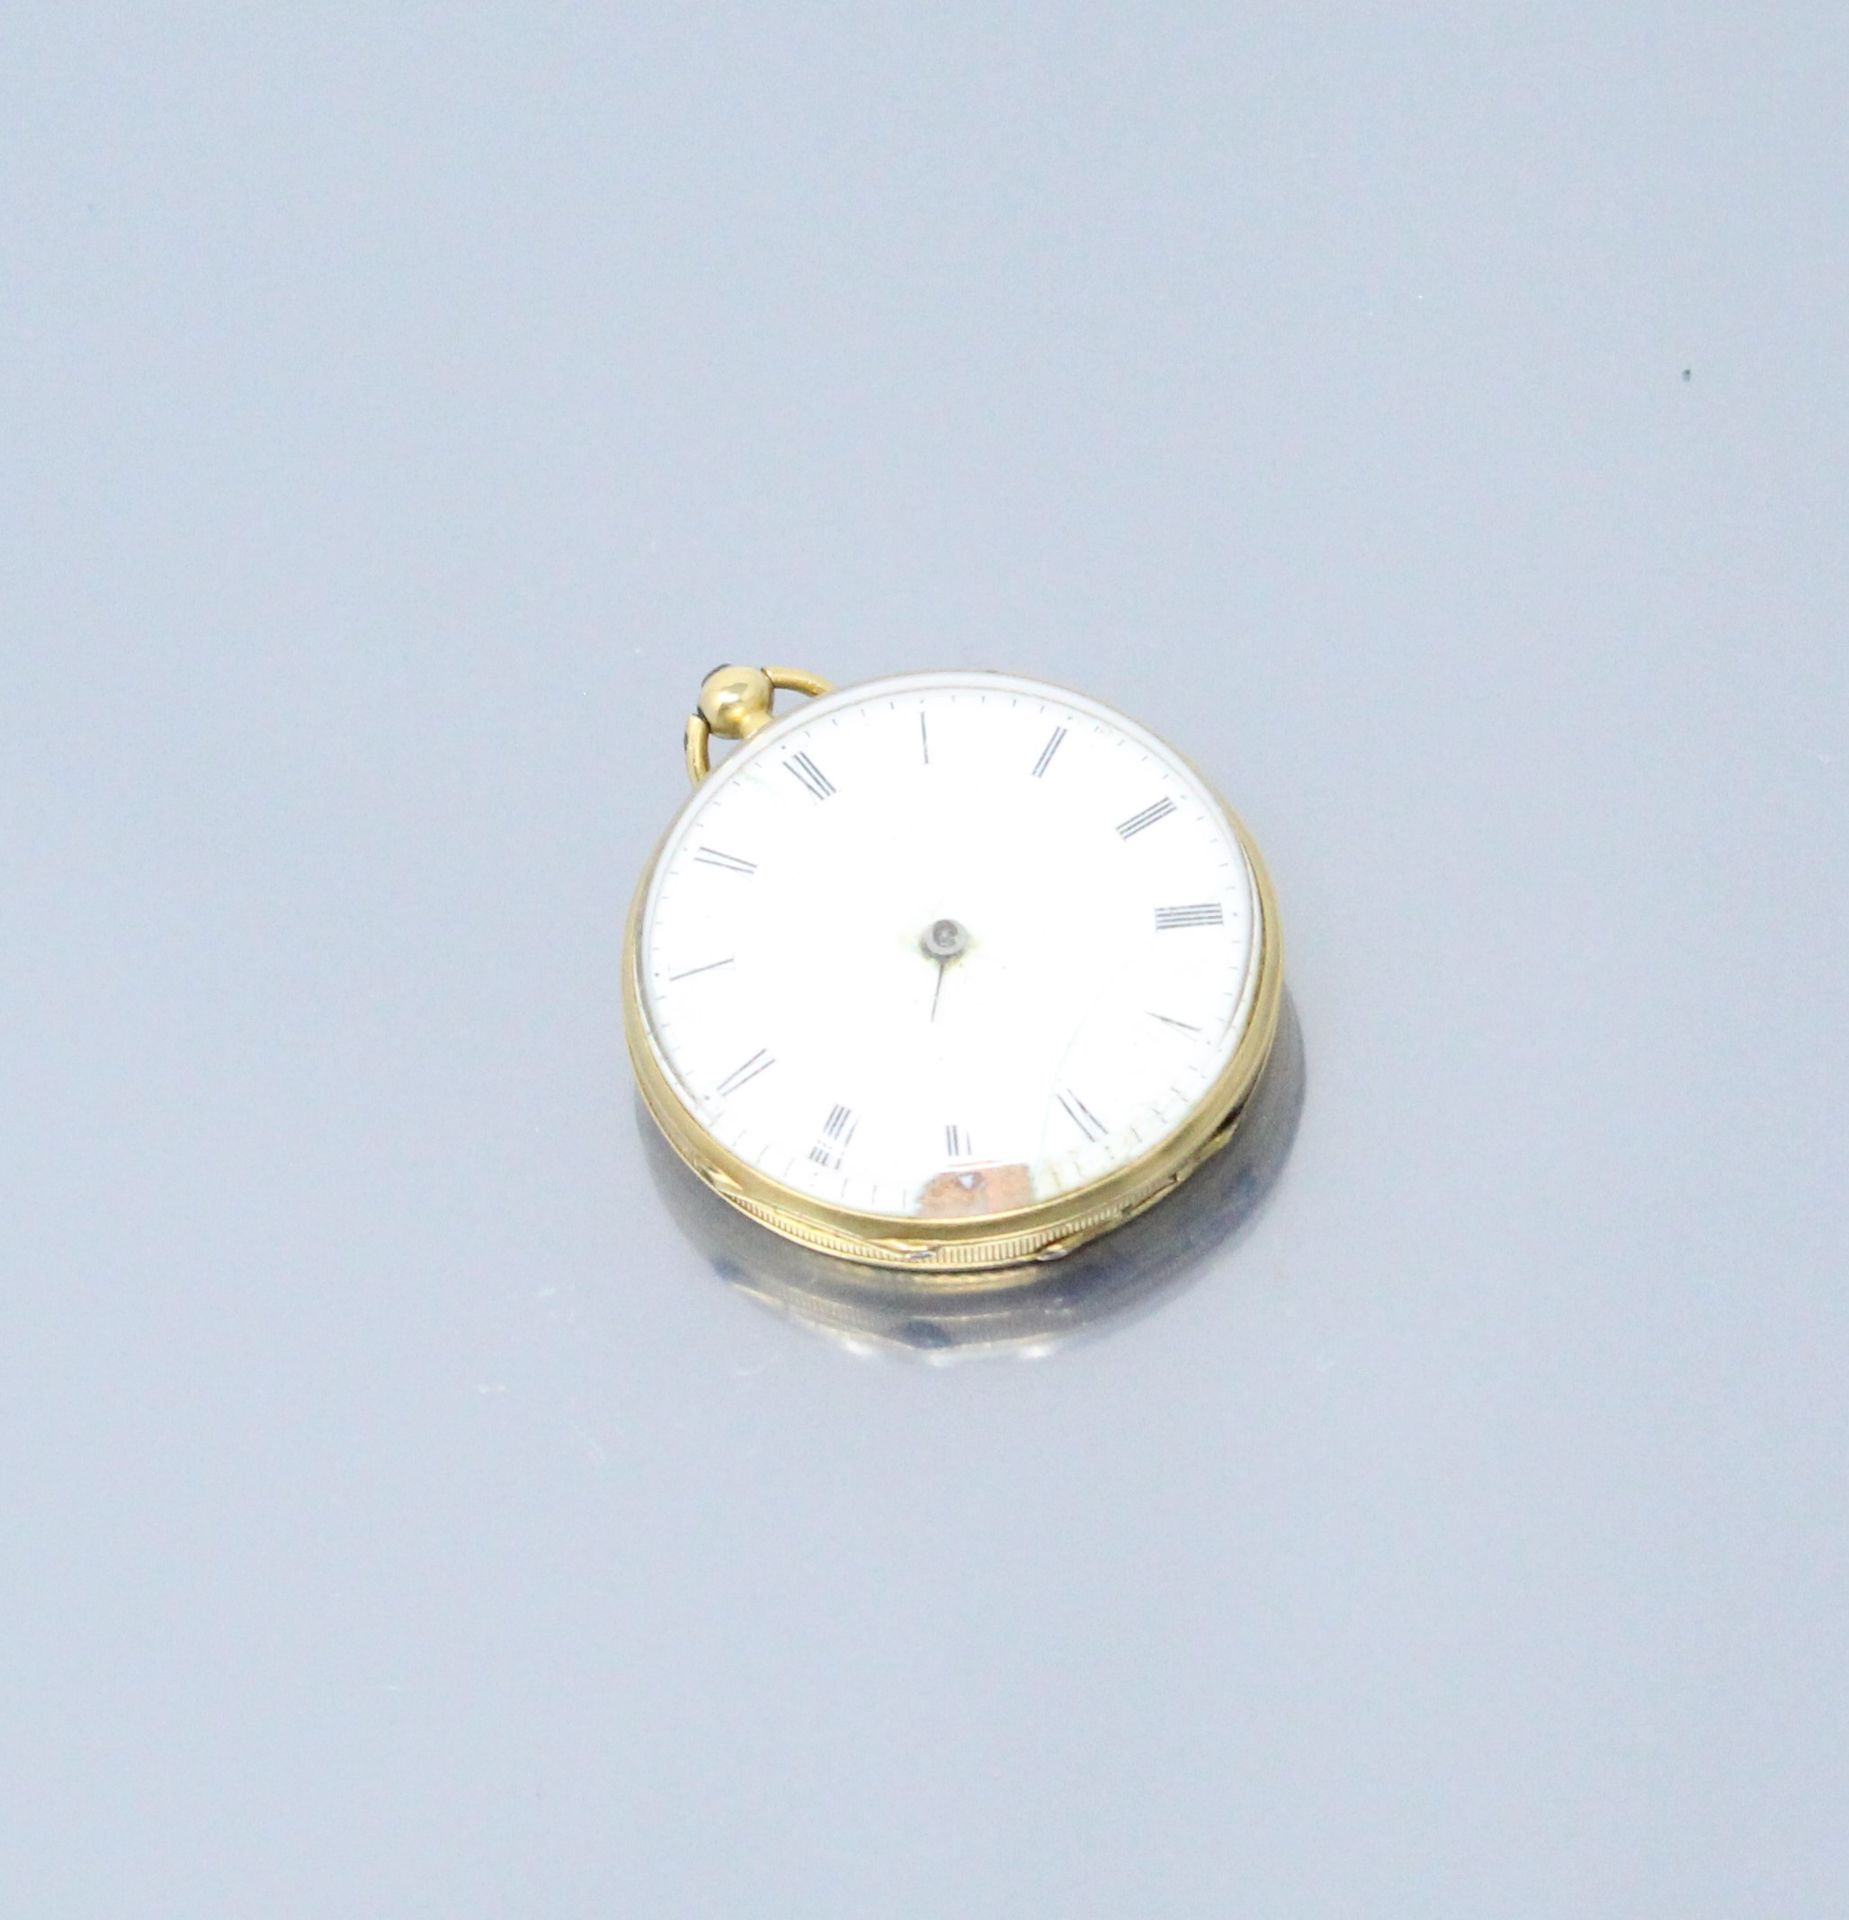 Null 18K（750）黄金怀表。白色背景的表盘，罗马数字表示小时和分钟。盒子上有扭索纹，并装饰有一束小的珐琅彩玫瑰花。

以马头为标志。

毛重：29.60&hellip;